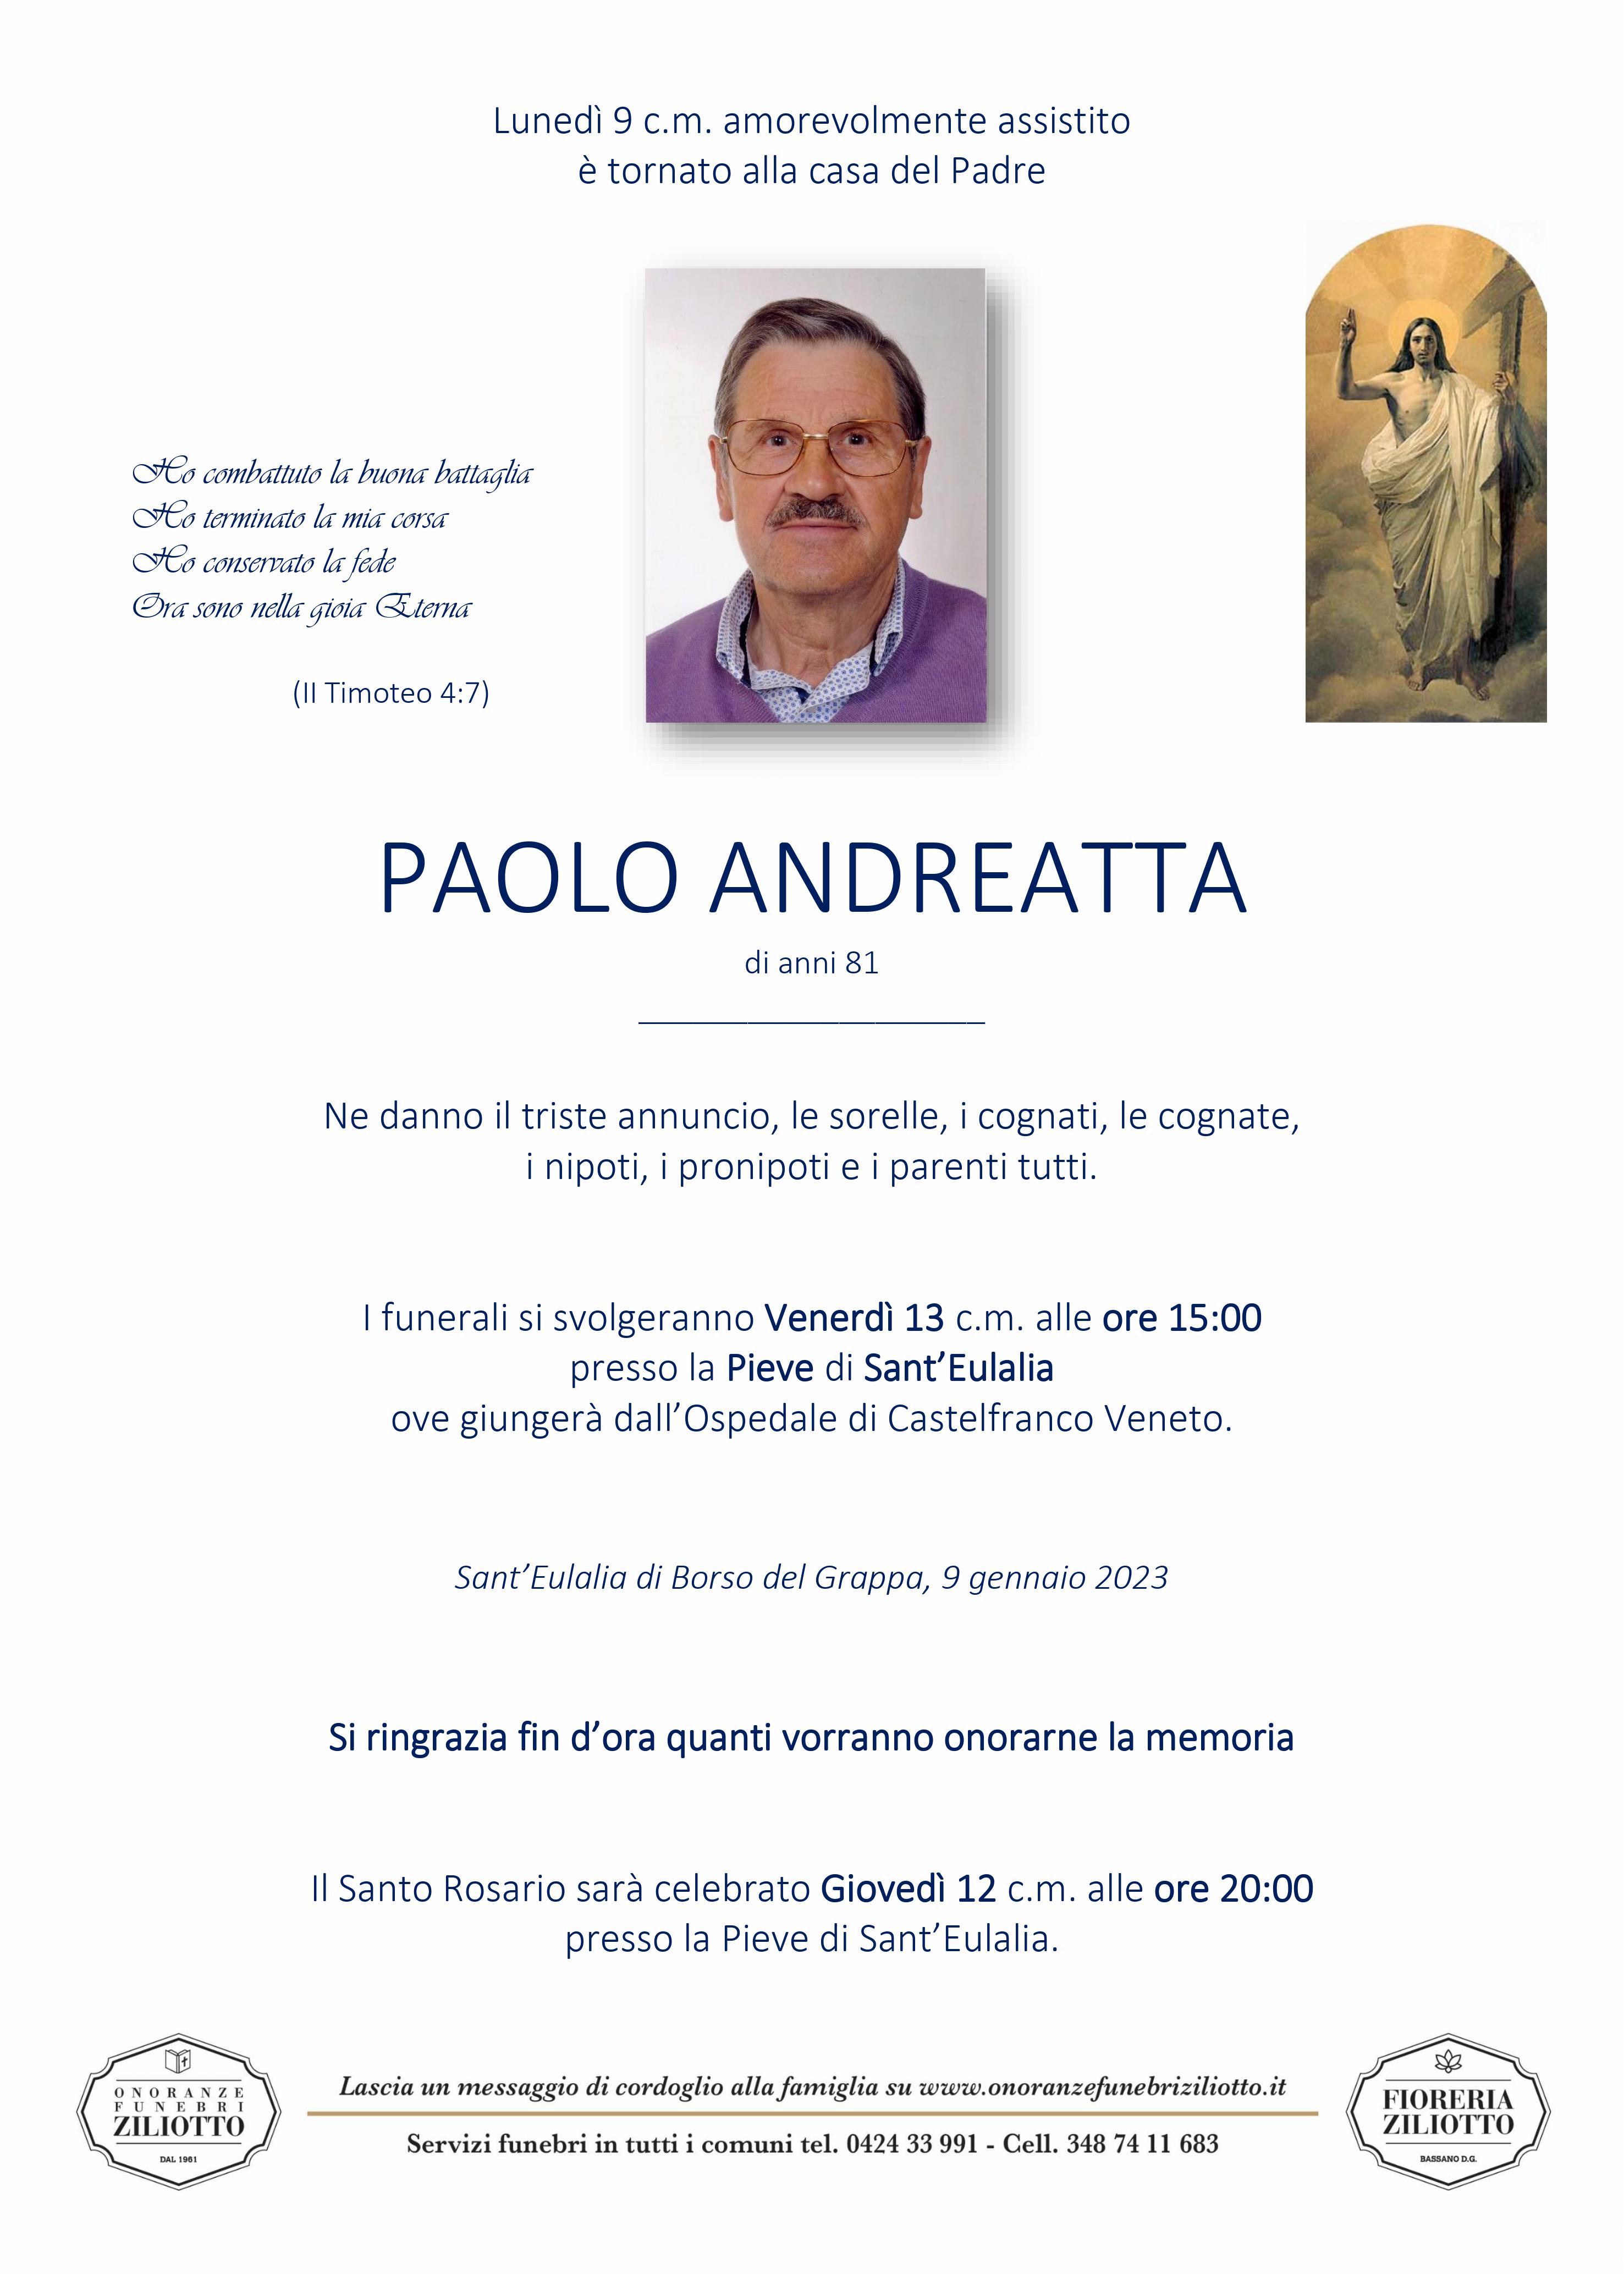 Paolo Andreatta - 81 anni - Sant'Eulalia di Borso del Grappa